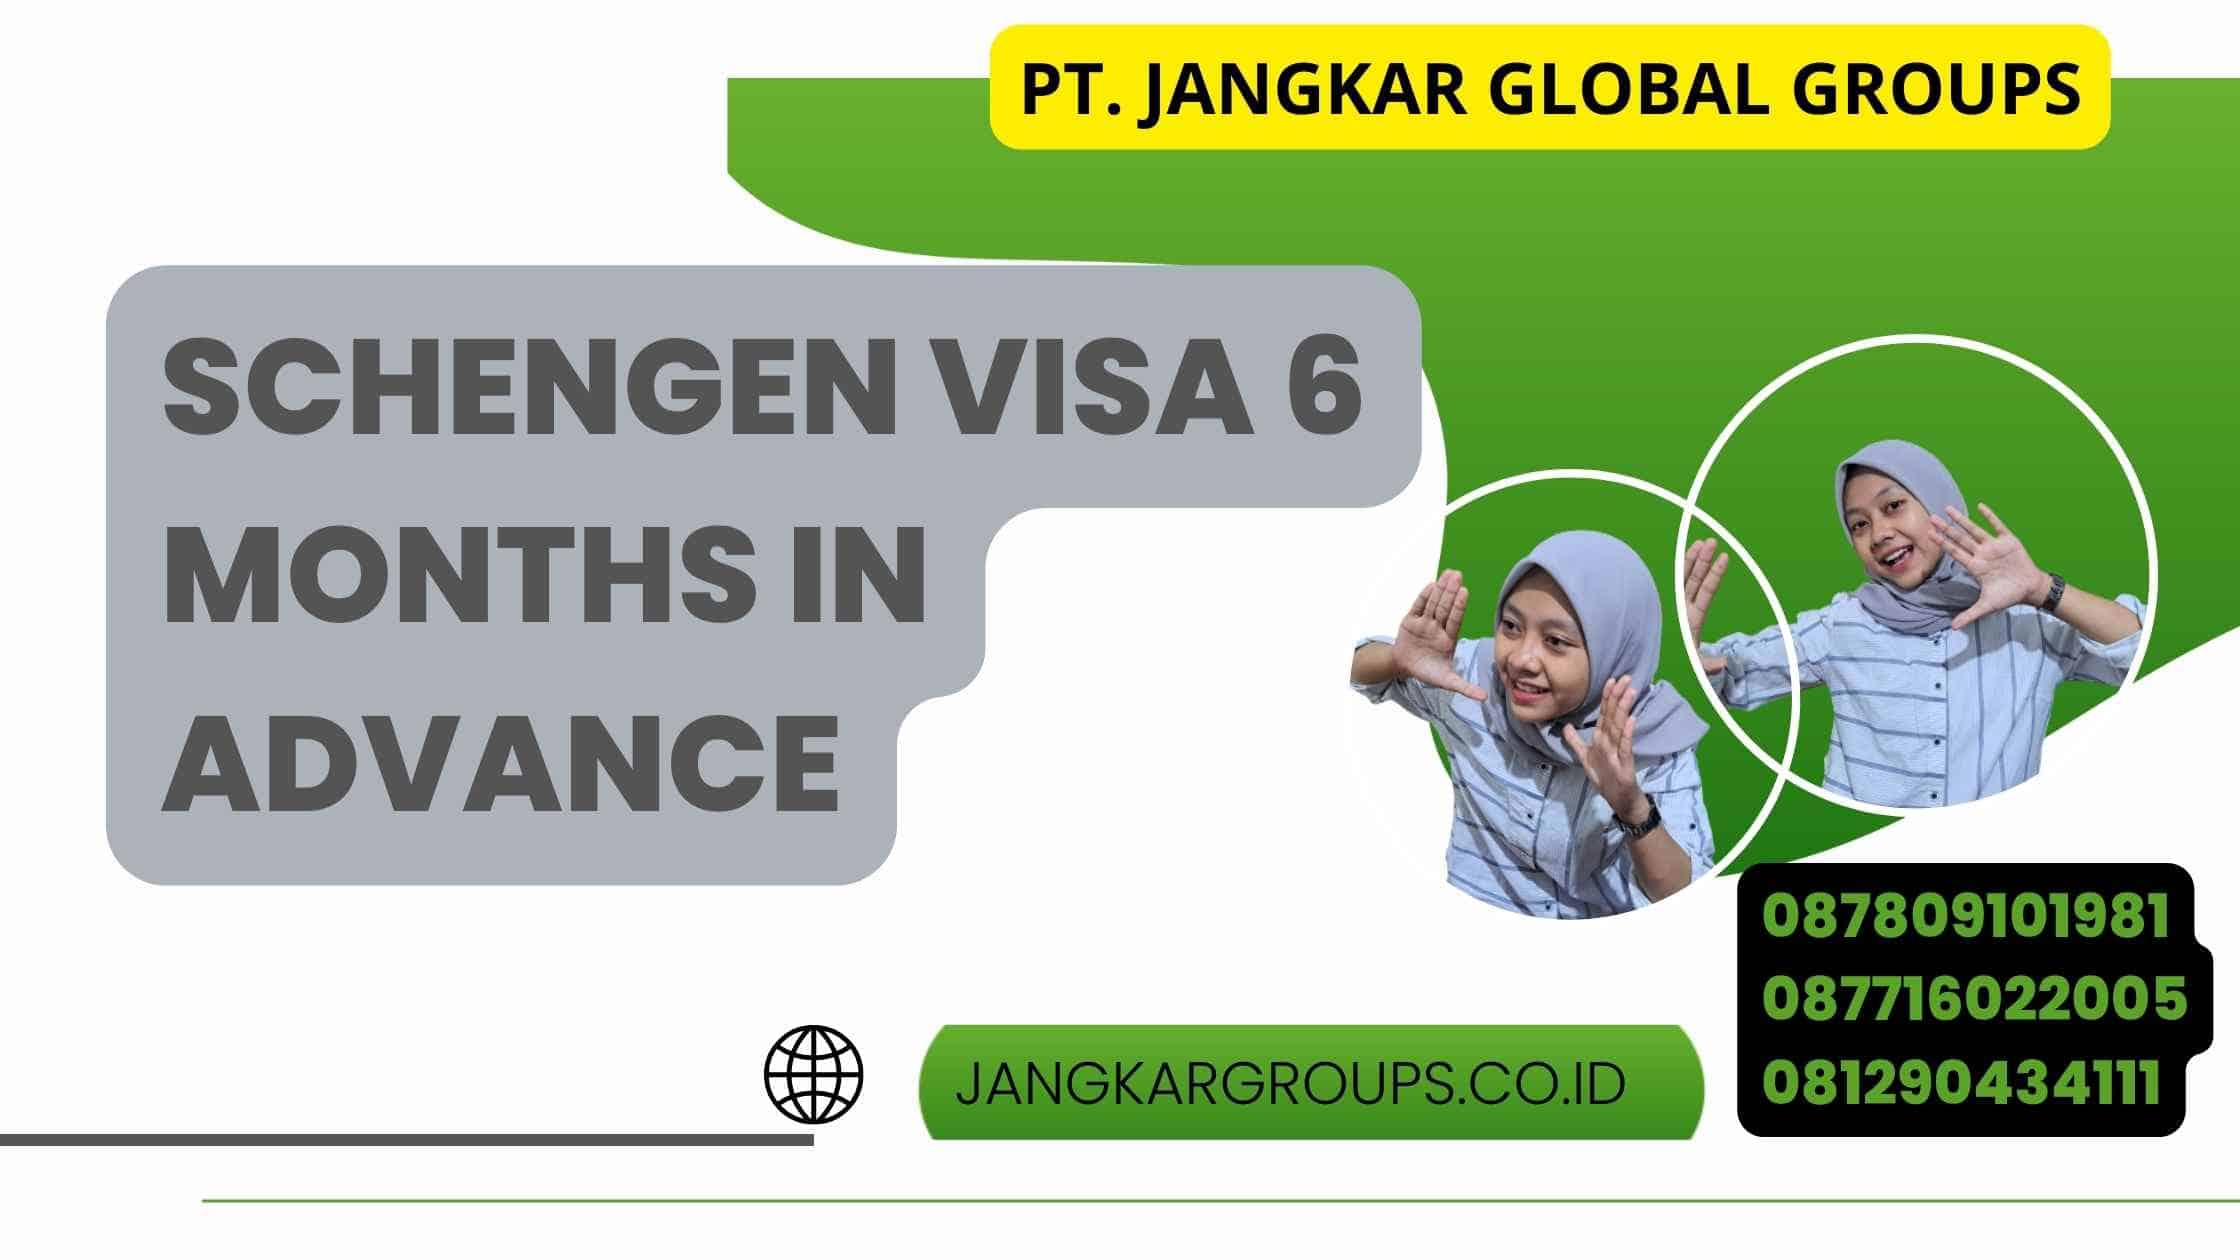 Schengen Visa 6 Months In Advance